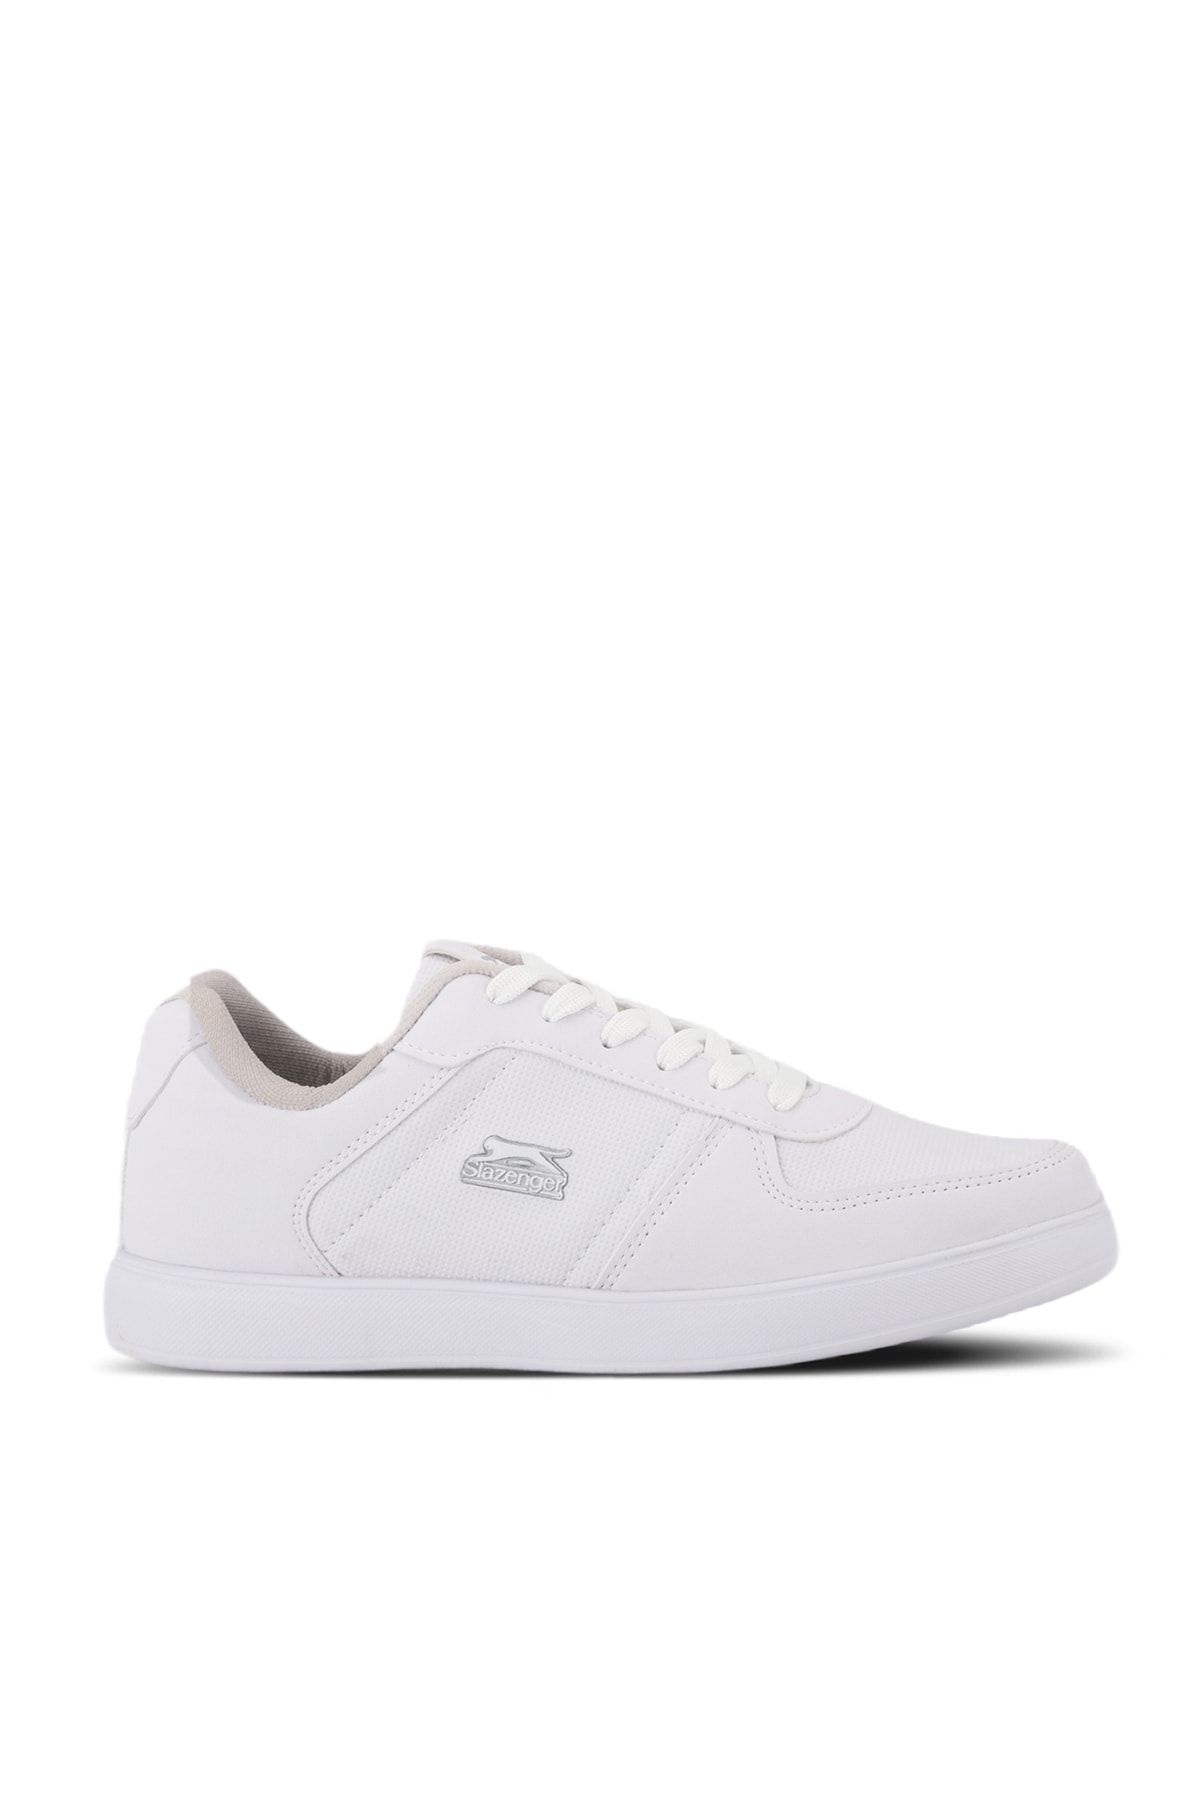 Slazenger POINT NEW I Sneaker Kadı Ayakkabı Beyaz